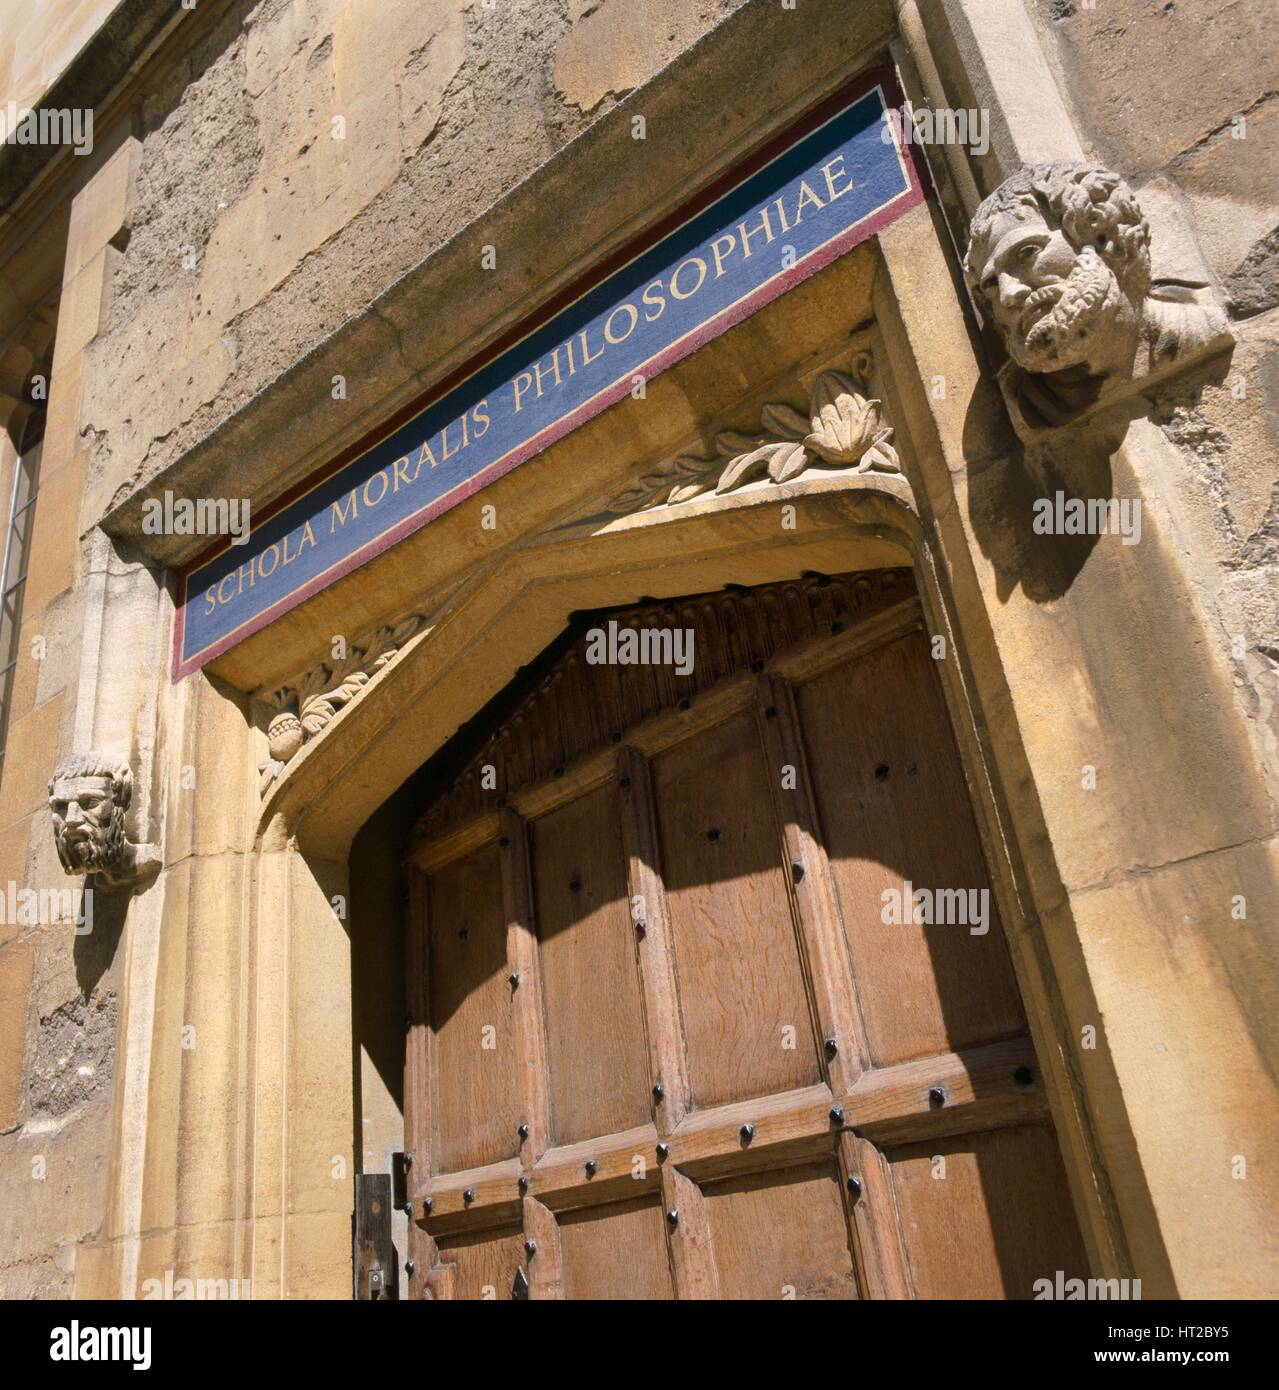 Portale della biblioteca Bodleian Library di Oxford, Oxfordshire, c2000s(?). Artista: Storico Inghilterra fotografo personale. Foto Stock